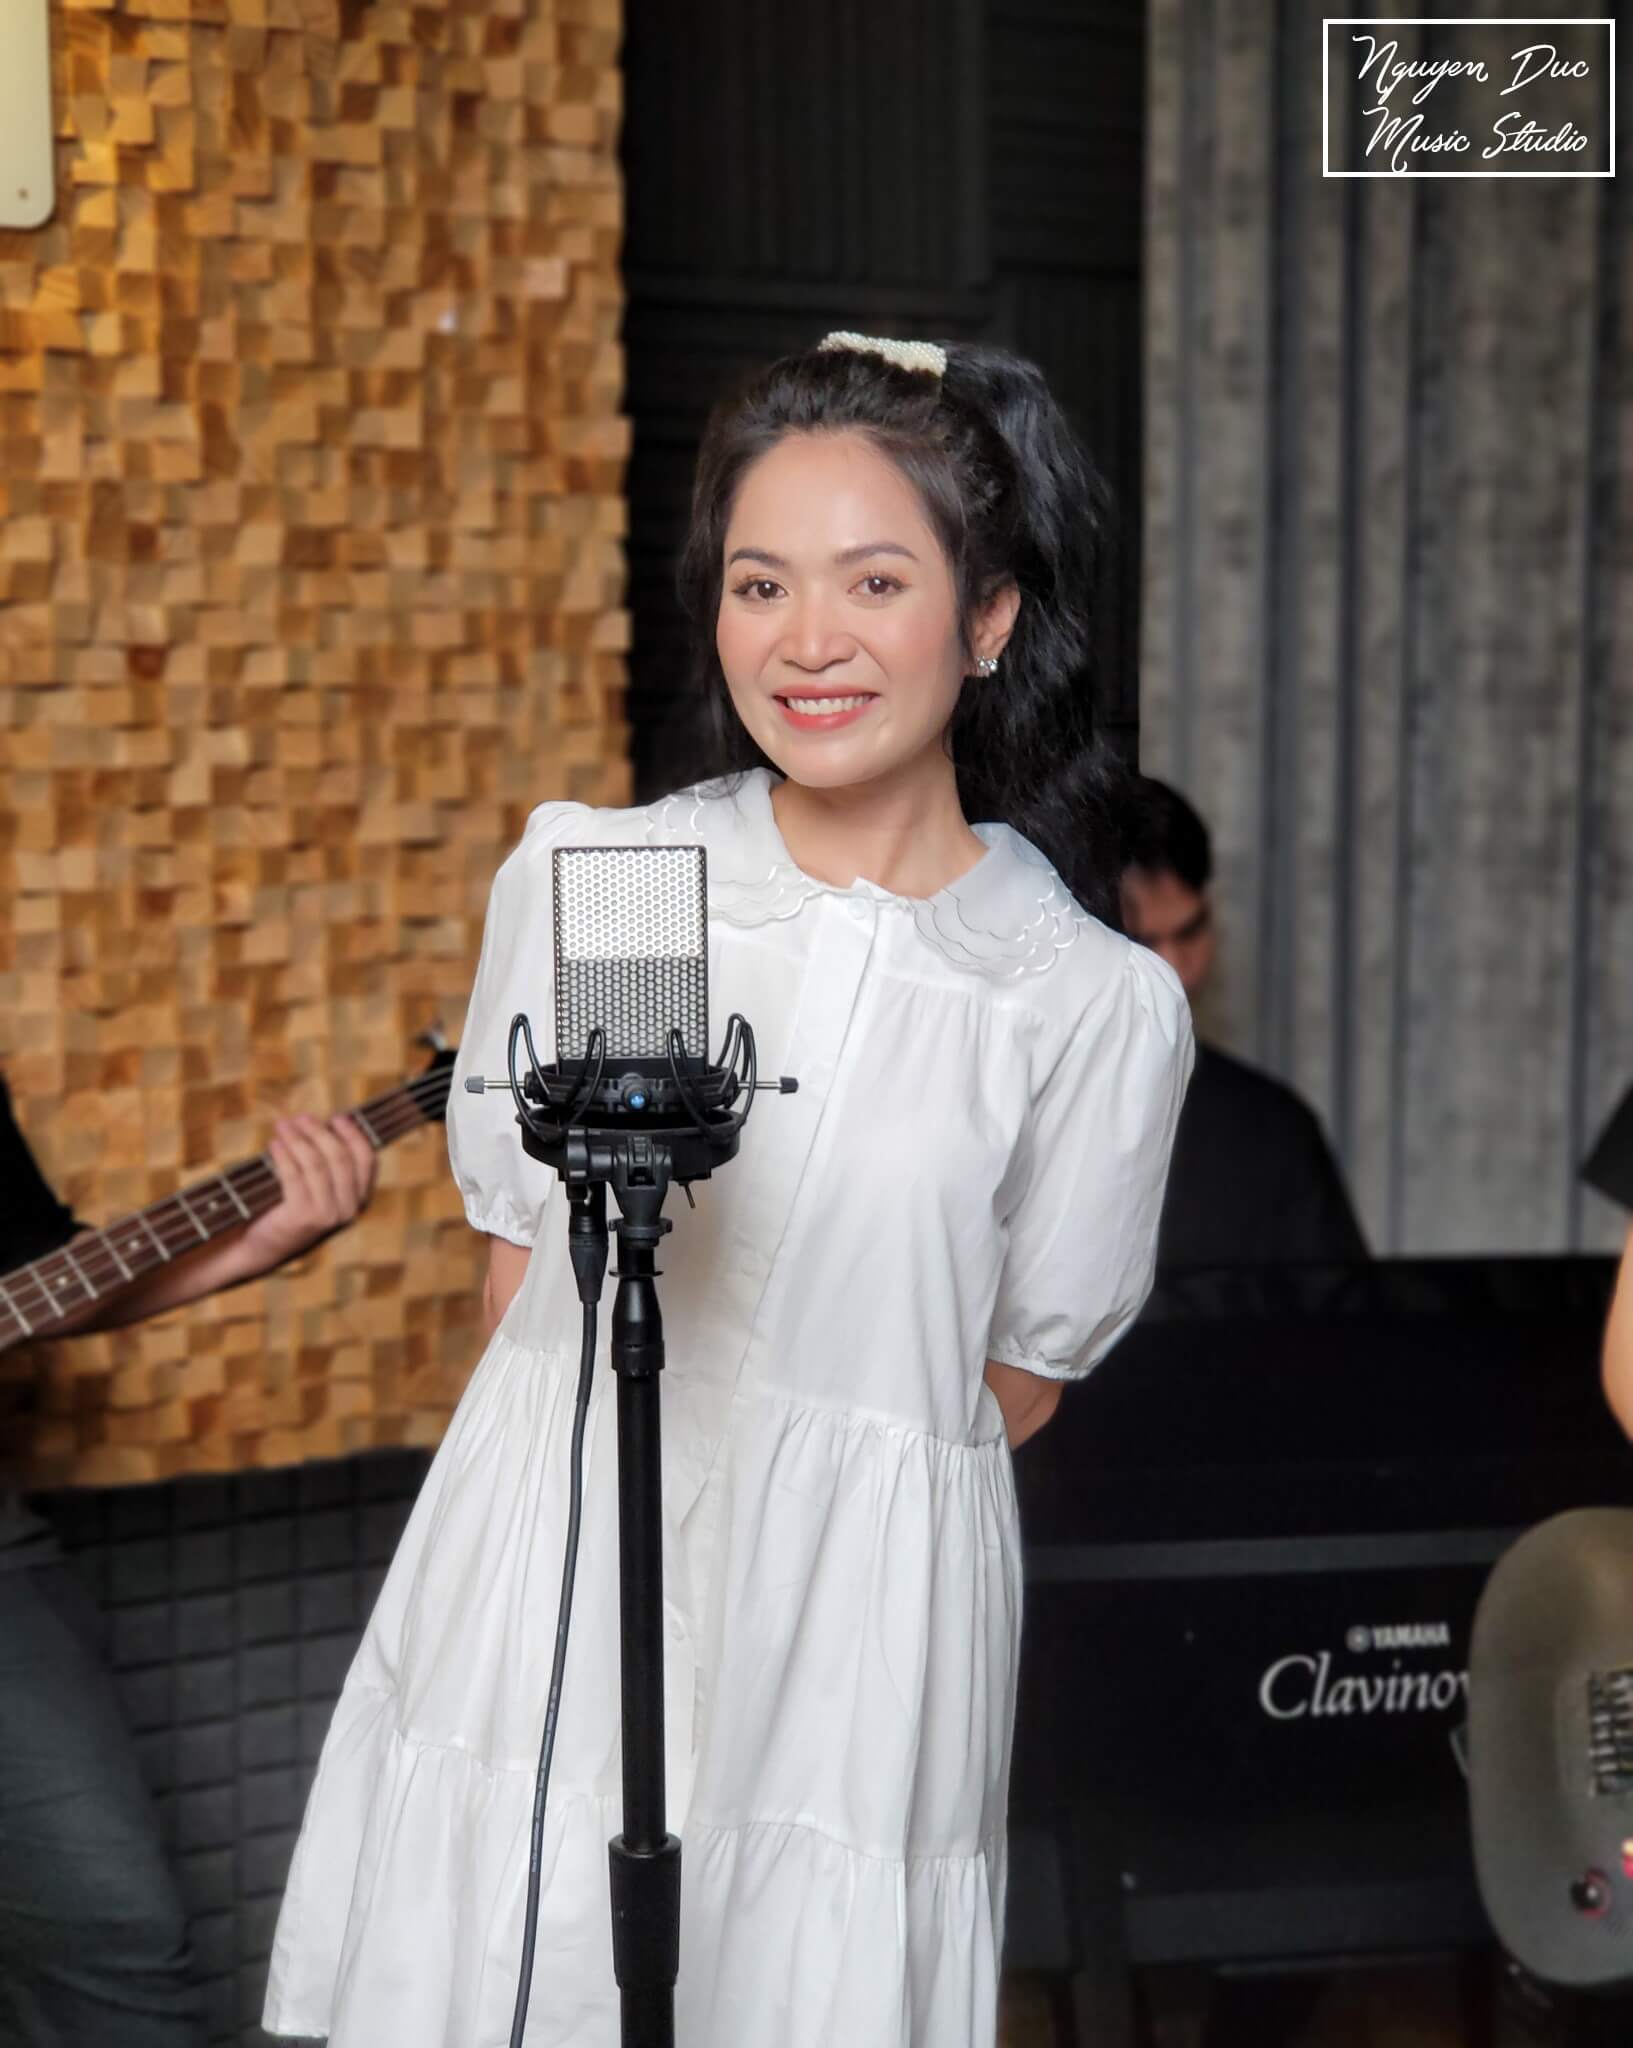 Quán quân Người Kể Chuyện Tình 2019 ca sĩ Duyên Quỳnh thu âm và quay MV tại phòng thu Nguyễn Đức Music - Dịch vụ đặc sắc của Nguyễn Đức Music